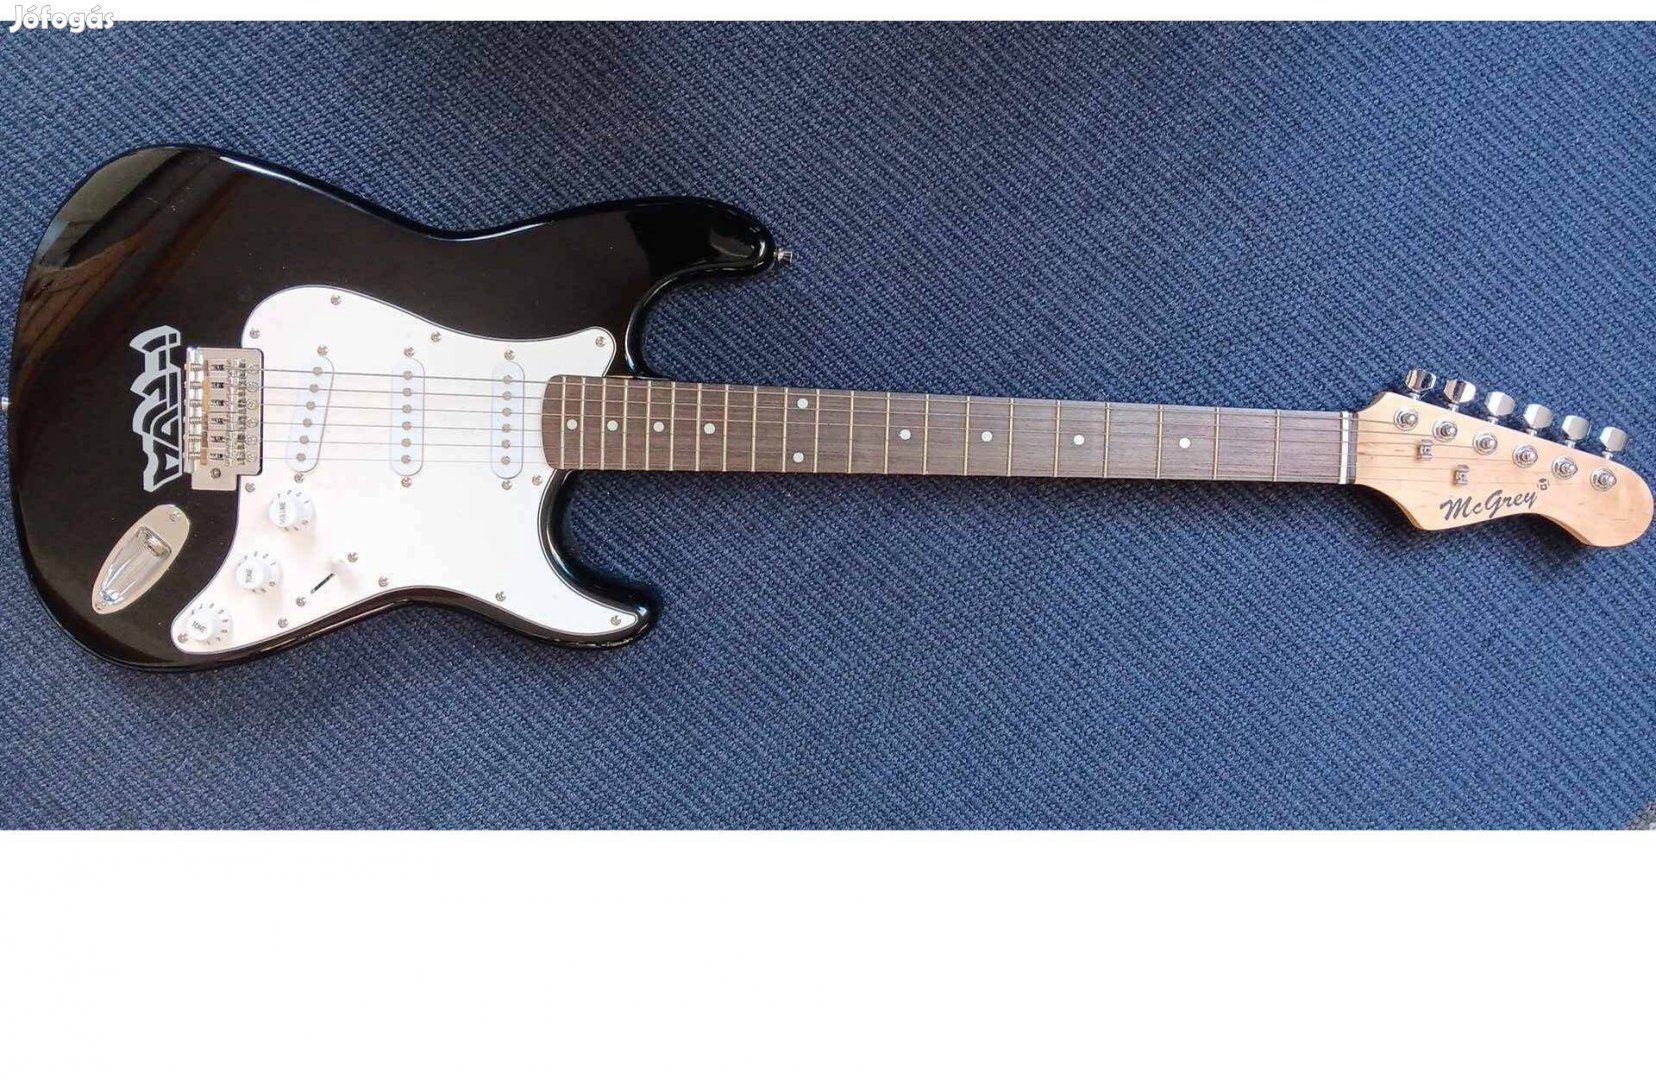 Mcgrey Stratocaster gitár